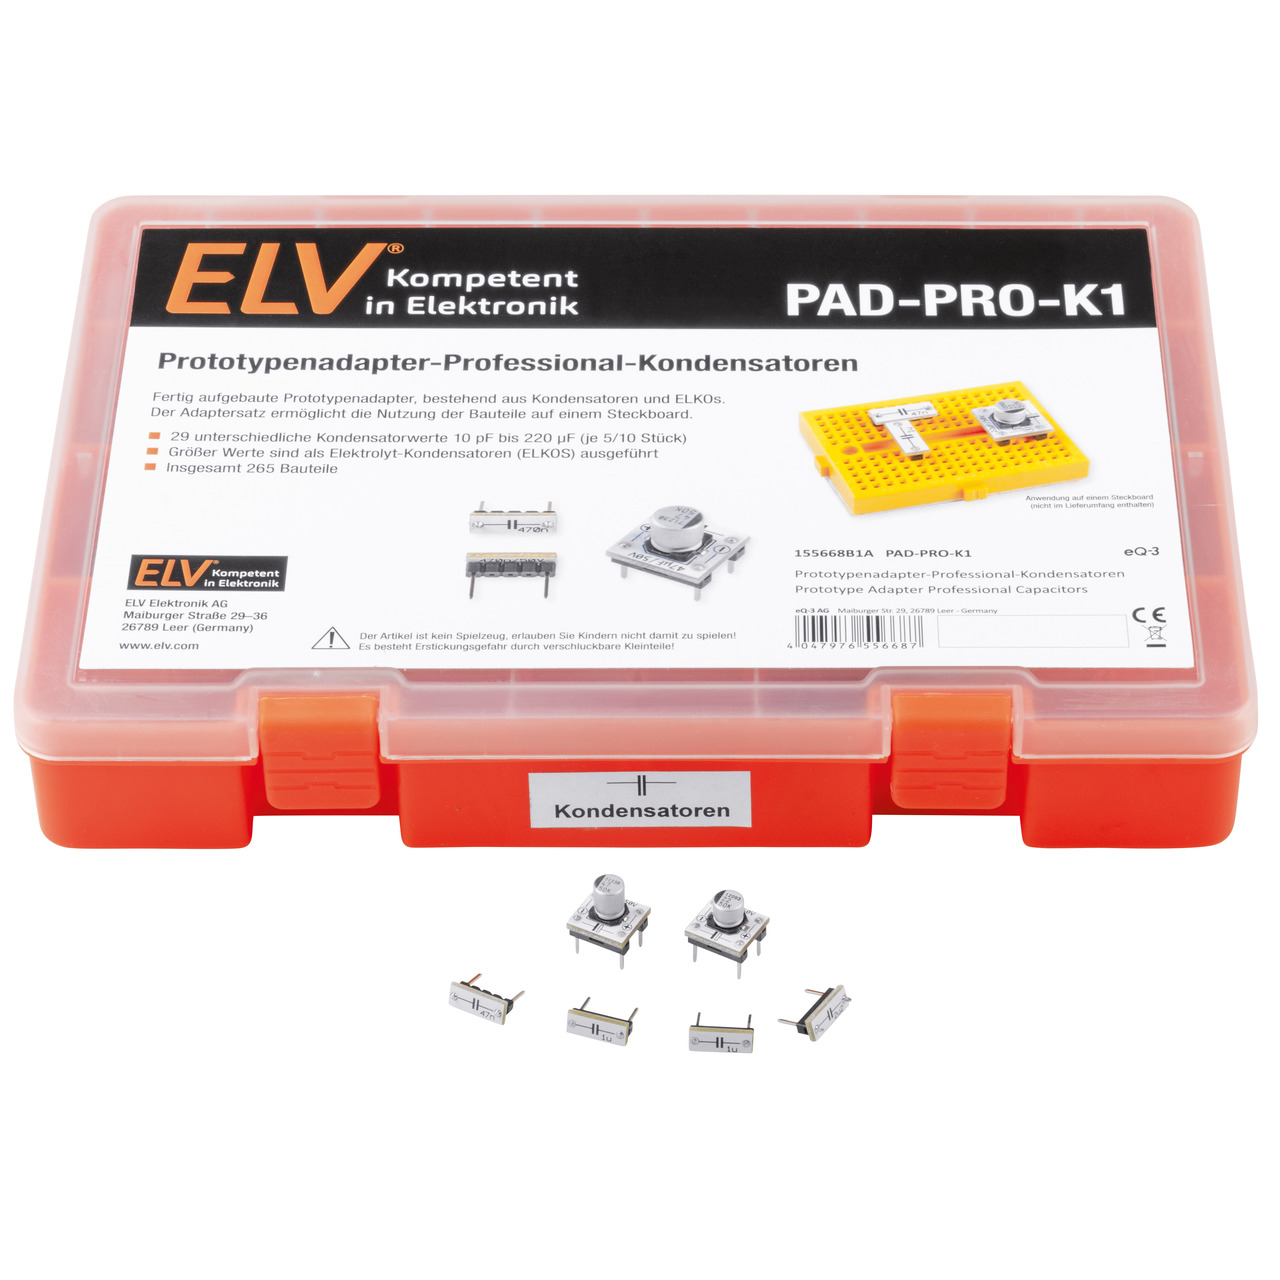 ELV Aufbewahrungsbox mit Kondensatoren und ELKOs PAD-PRO-K1- 265 Teile 